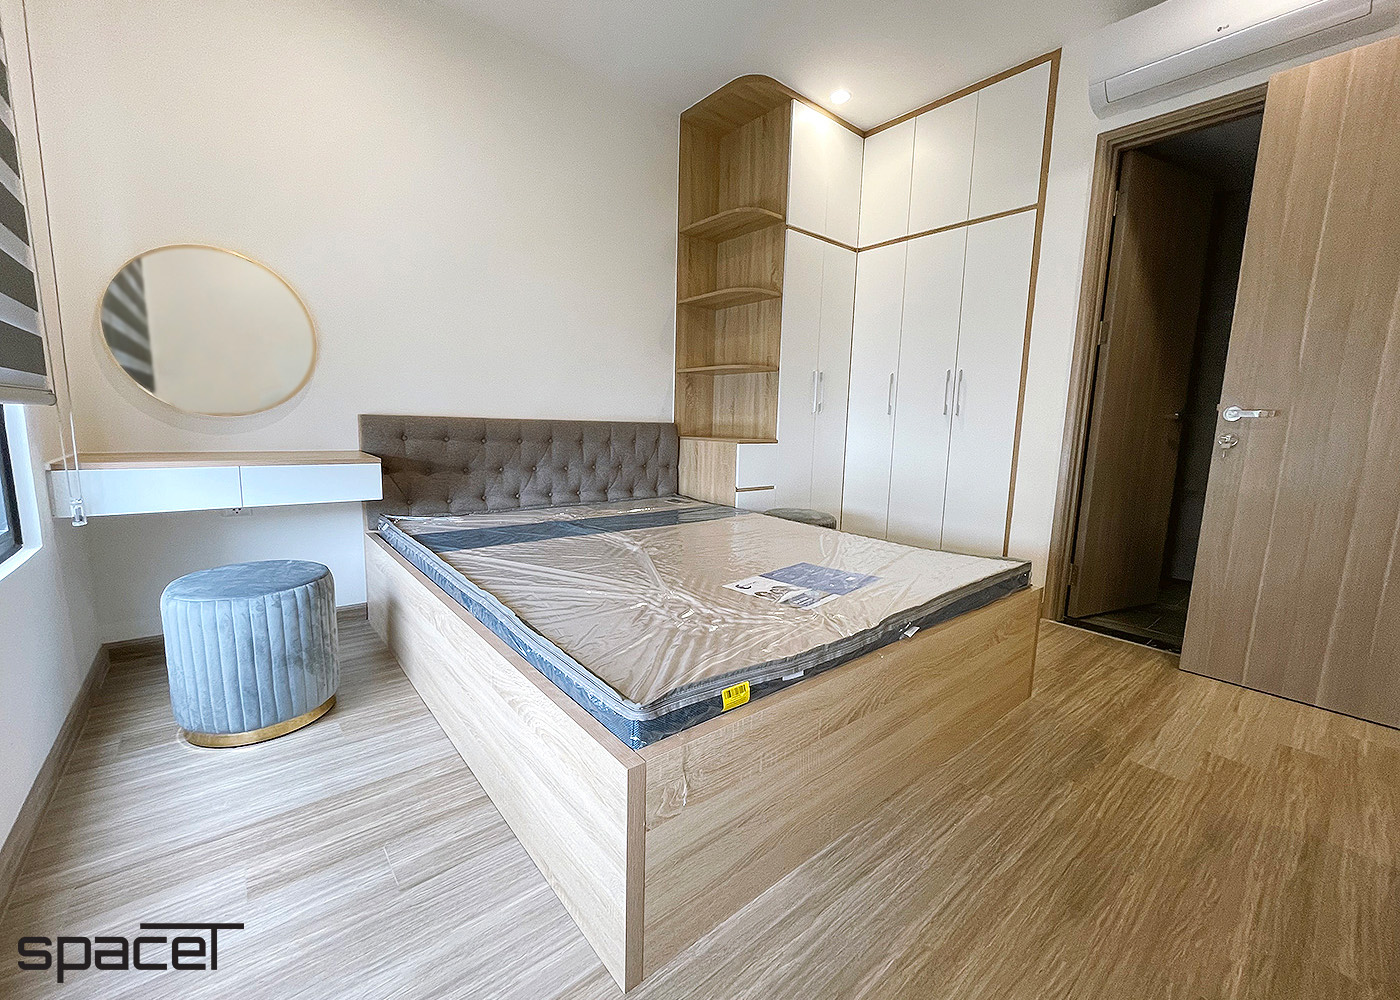 Phòng ngủ, phong cách hiện đại Modern, hoàn thiện nội thất, căn hộ The Origami Vinhomes